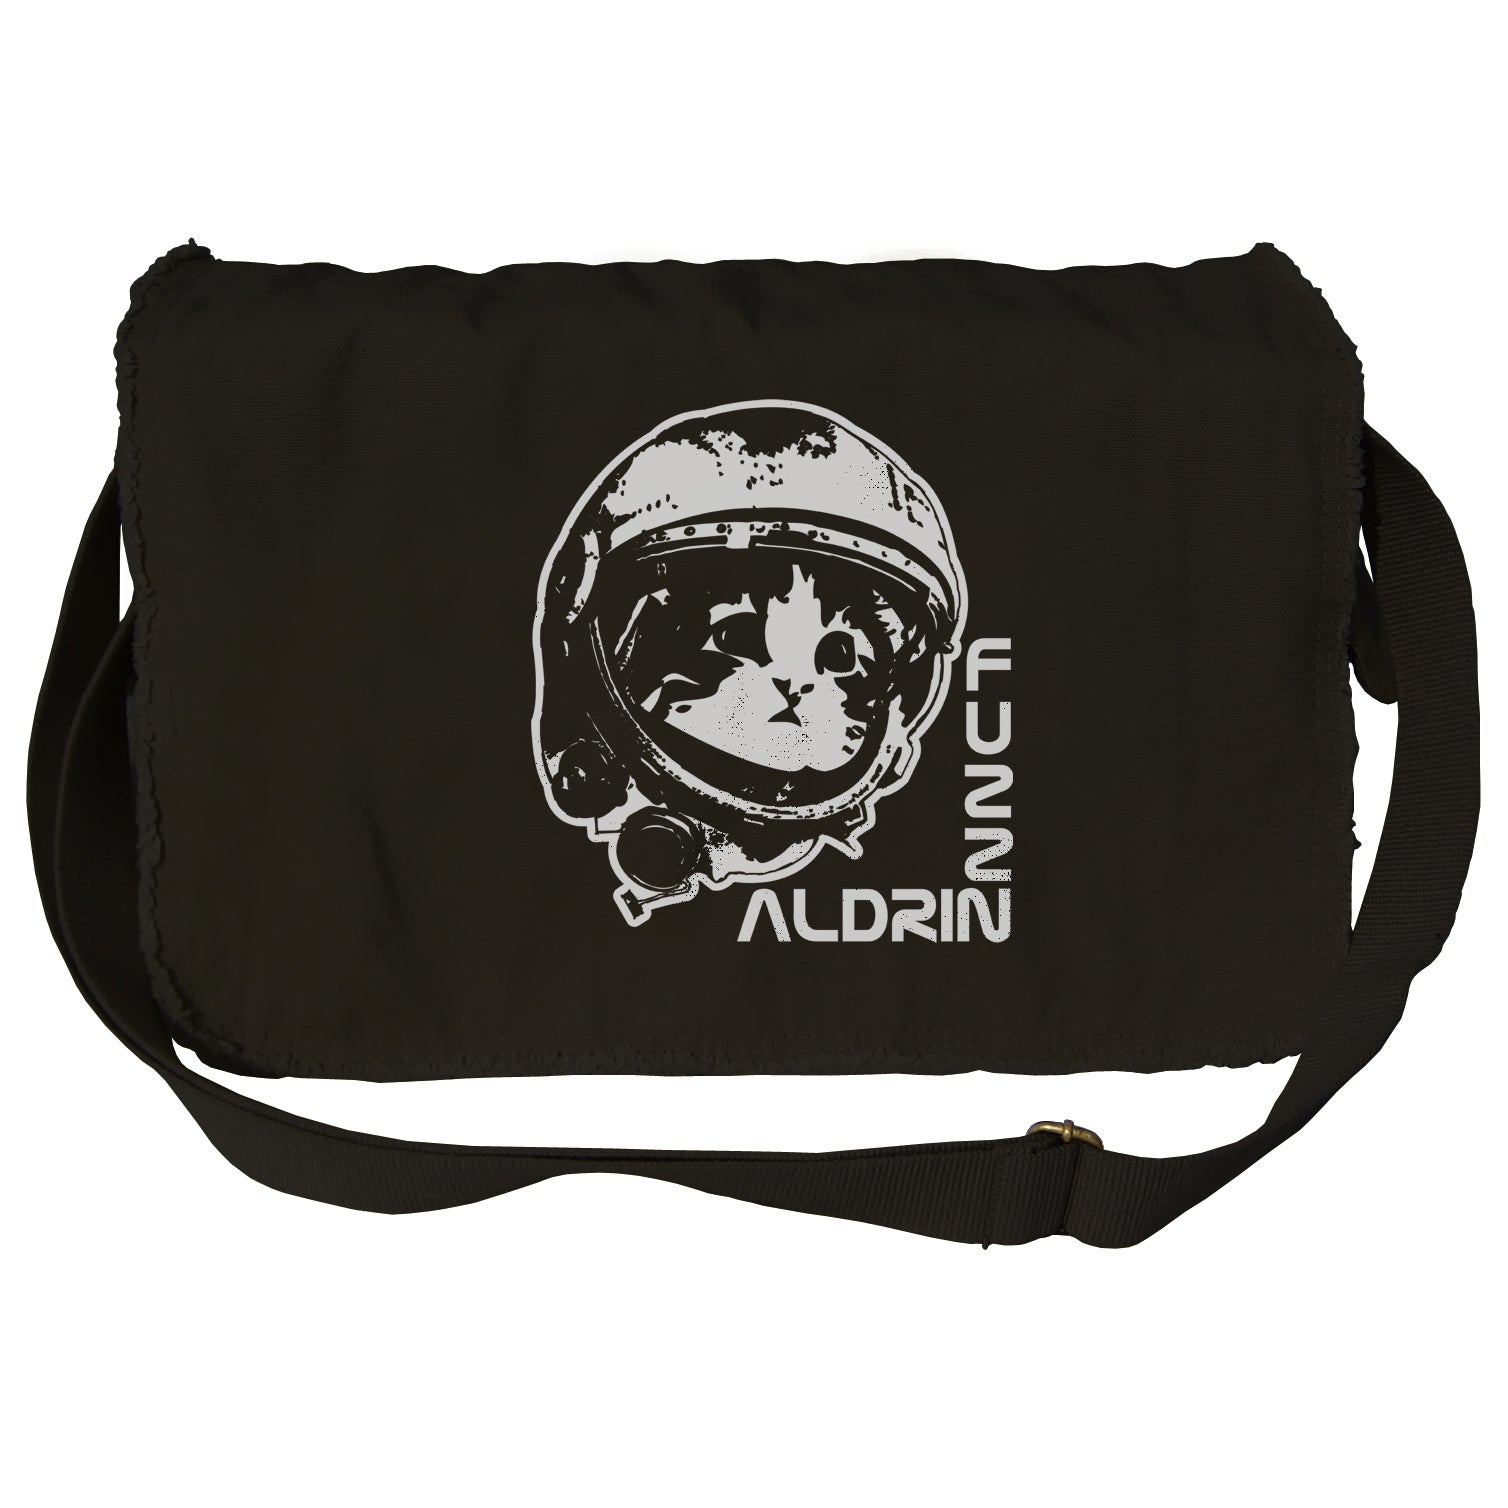 Fuzz Aldrin Messenger Bag - By Ex-Boyfriend